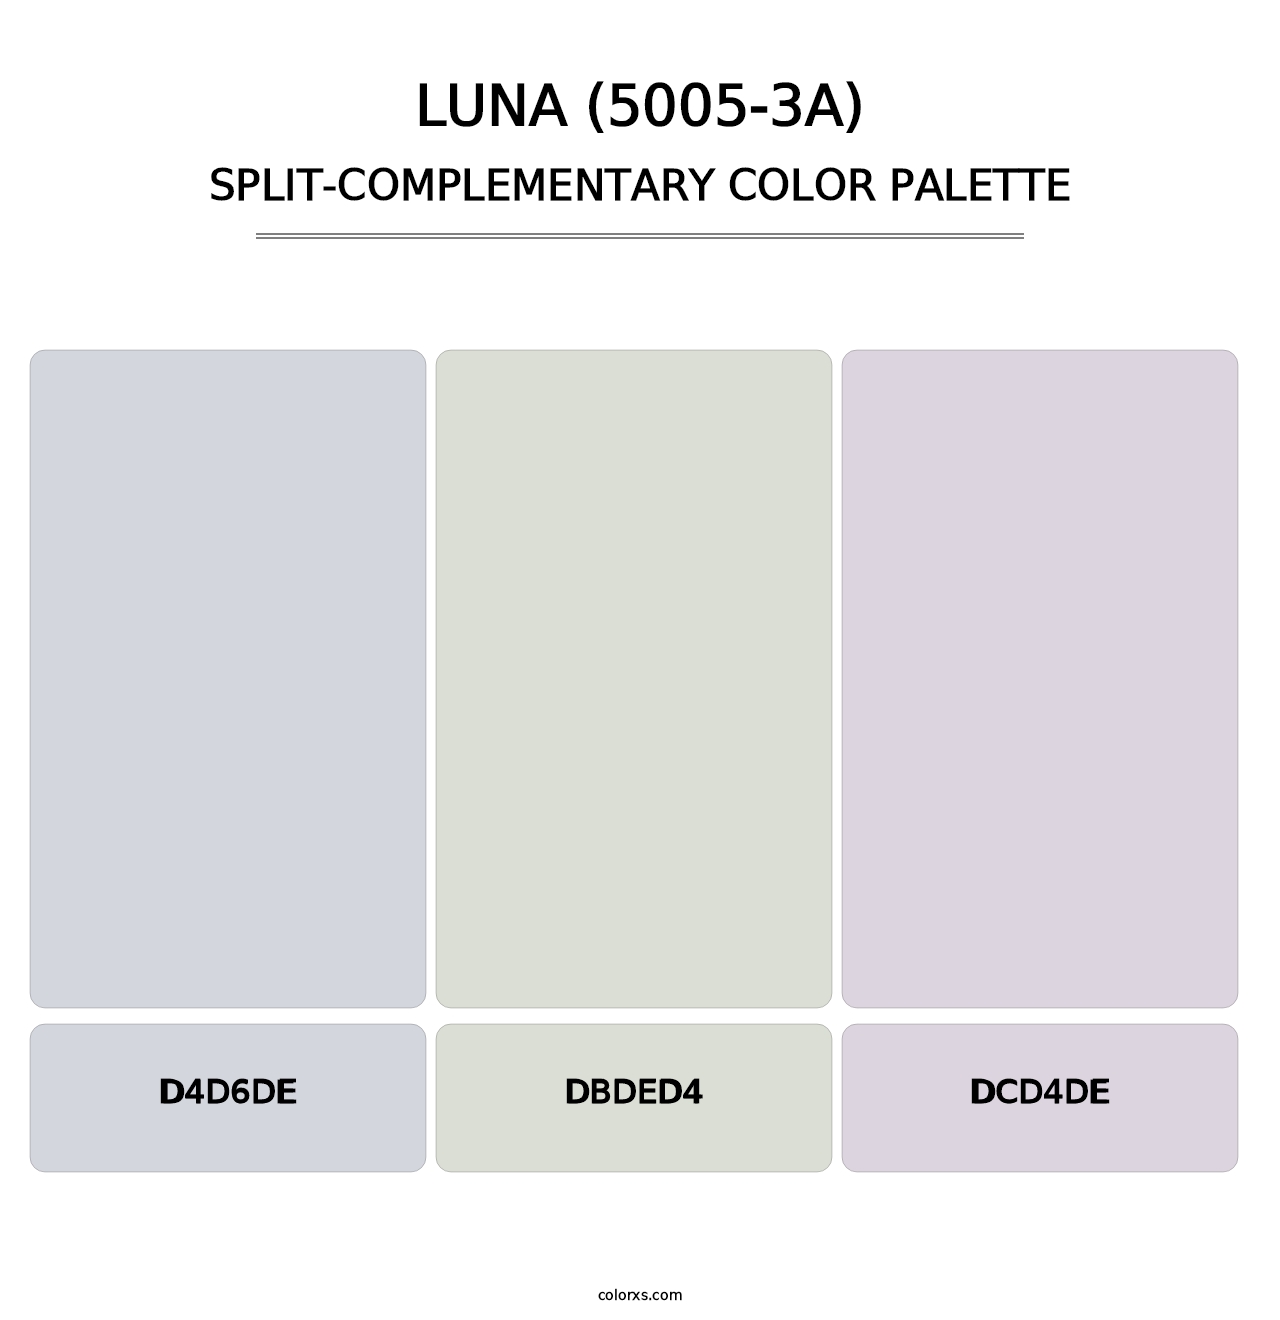 Luna (5005-3A) - Split-Complementary Color Palette